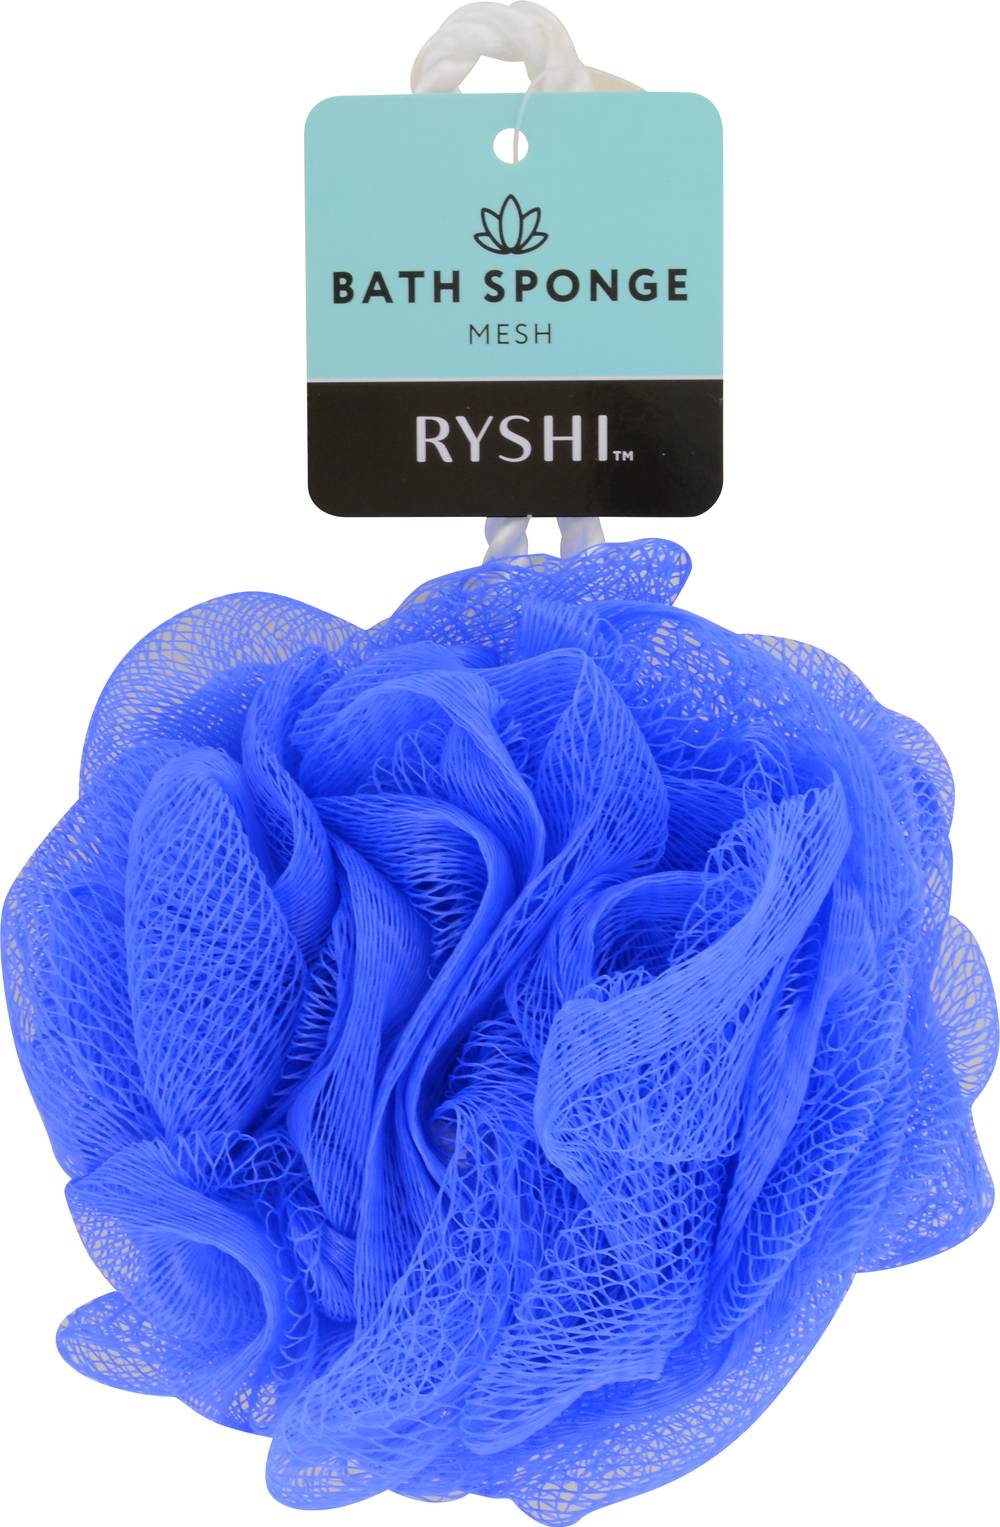 Ryshi Bath Sponge Mesh